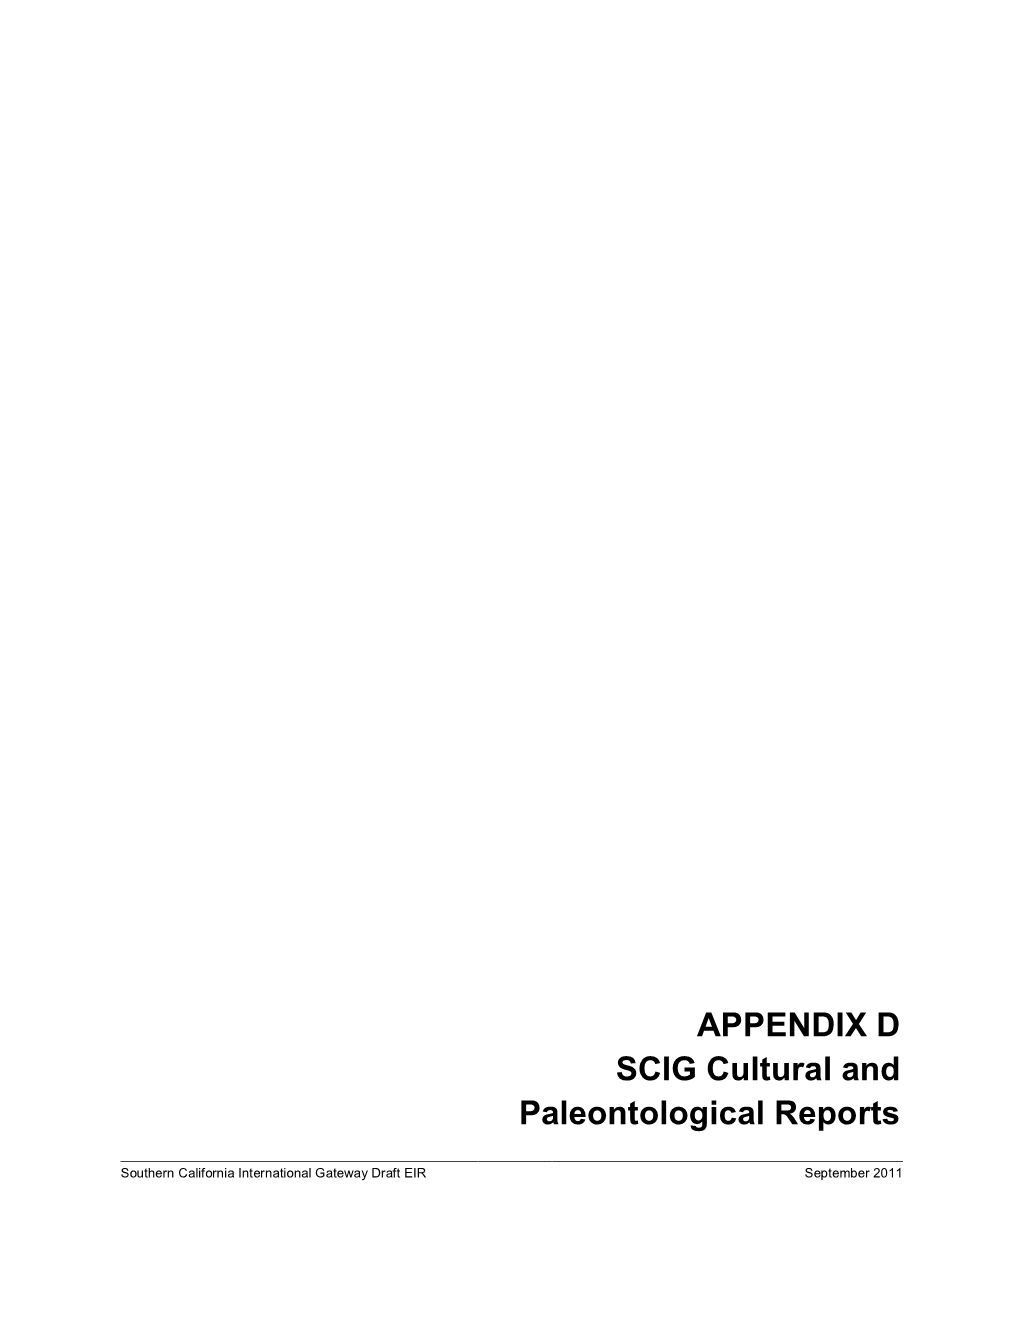 APPENDIX D SCIG Cultural and Paleontological Reports